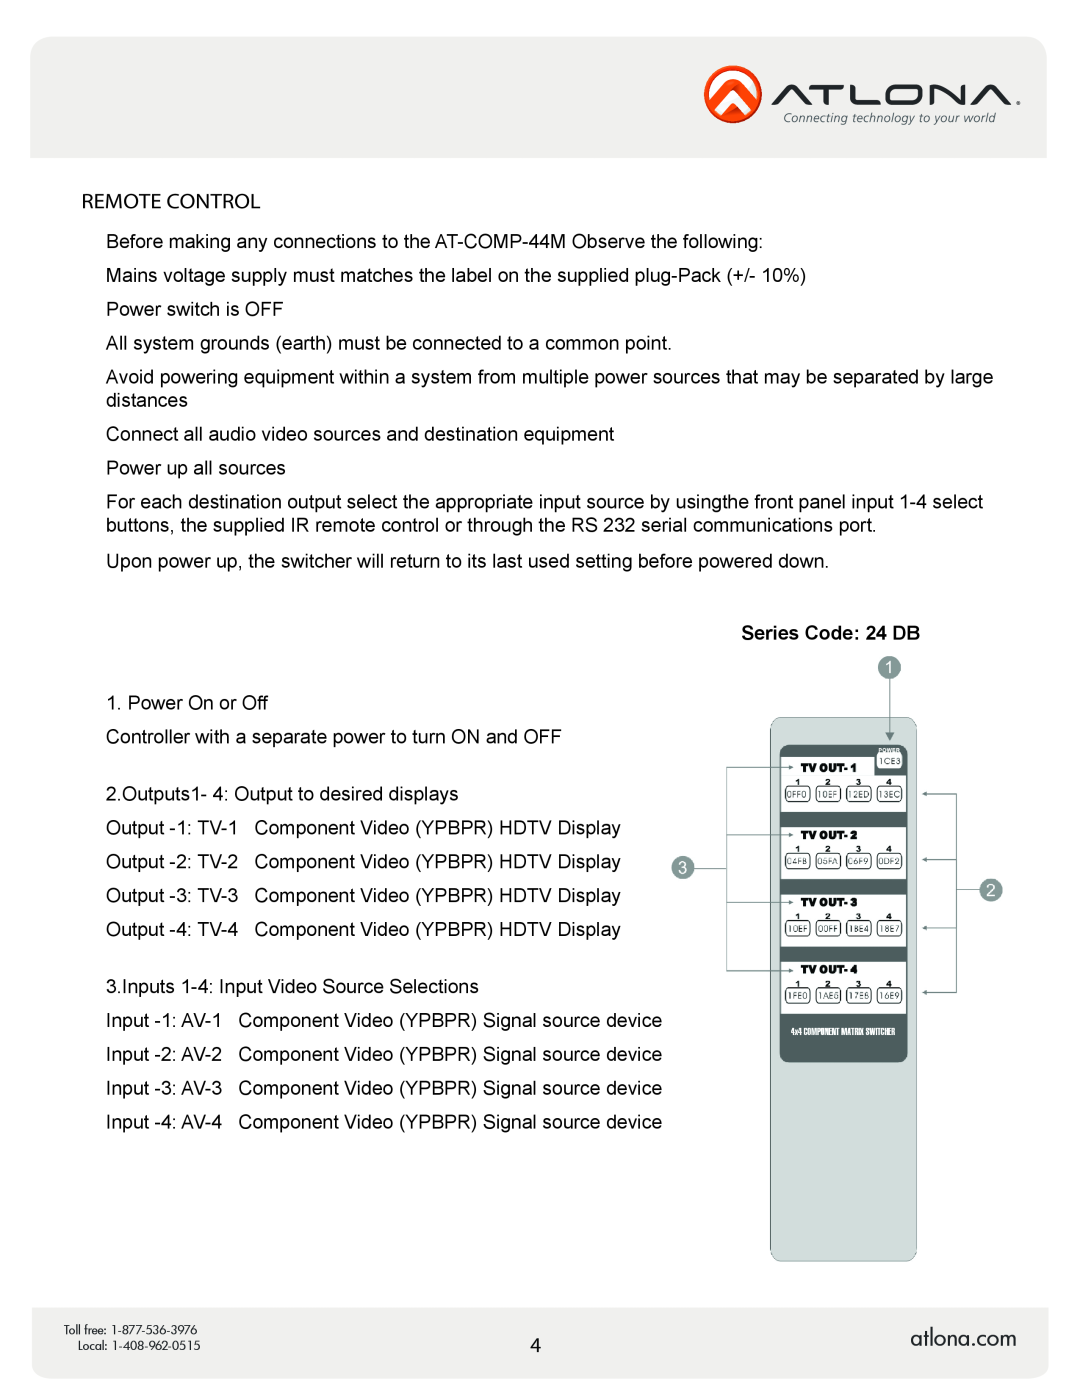 Atlona AT-COMP-44M user manual Remote Control, Series Code 24 DB 